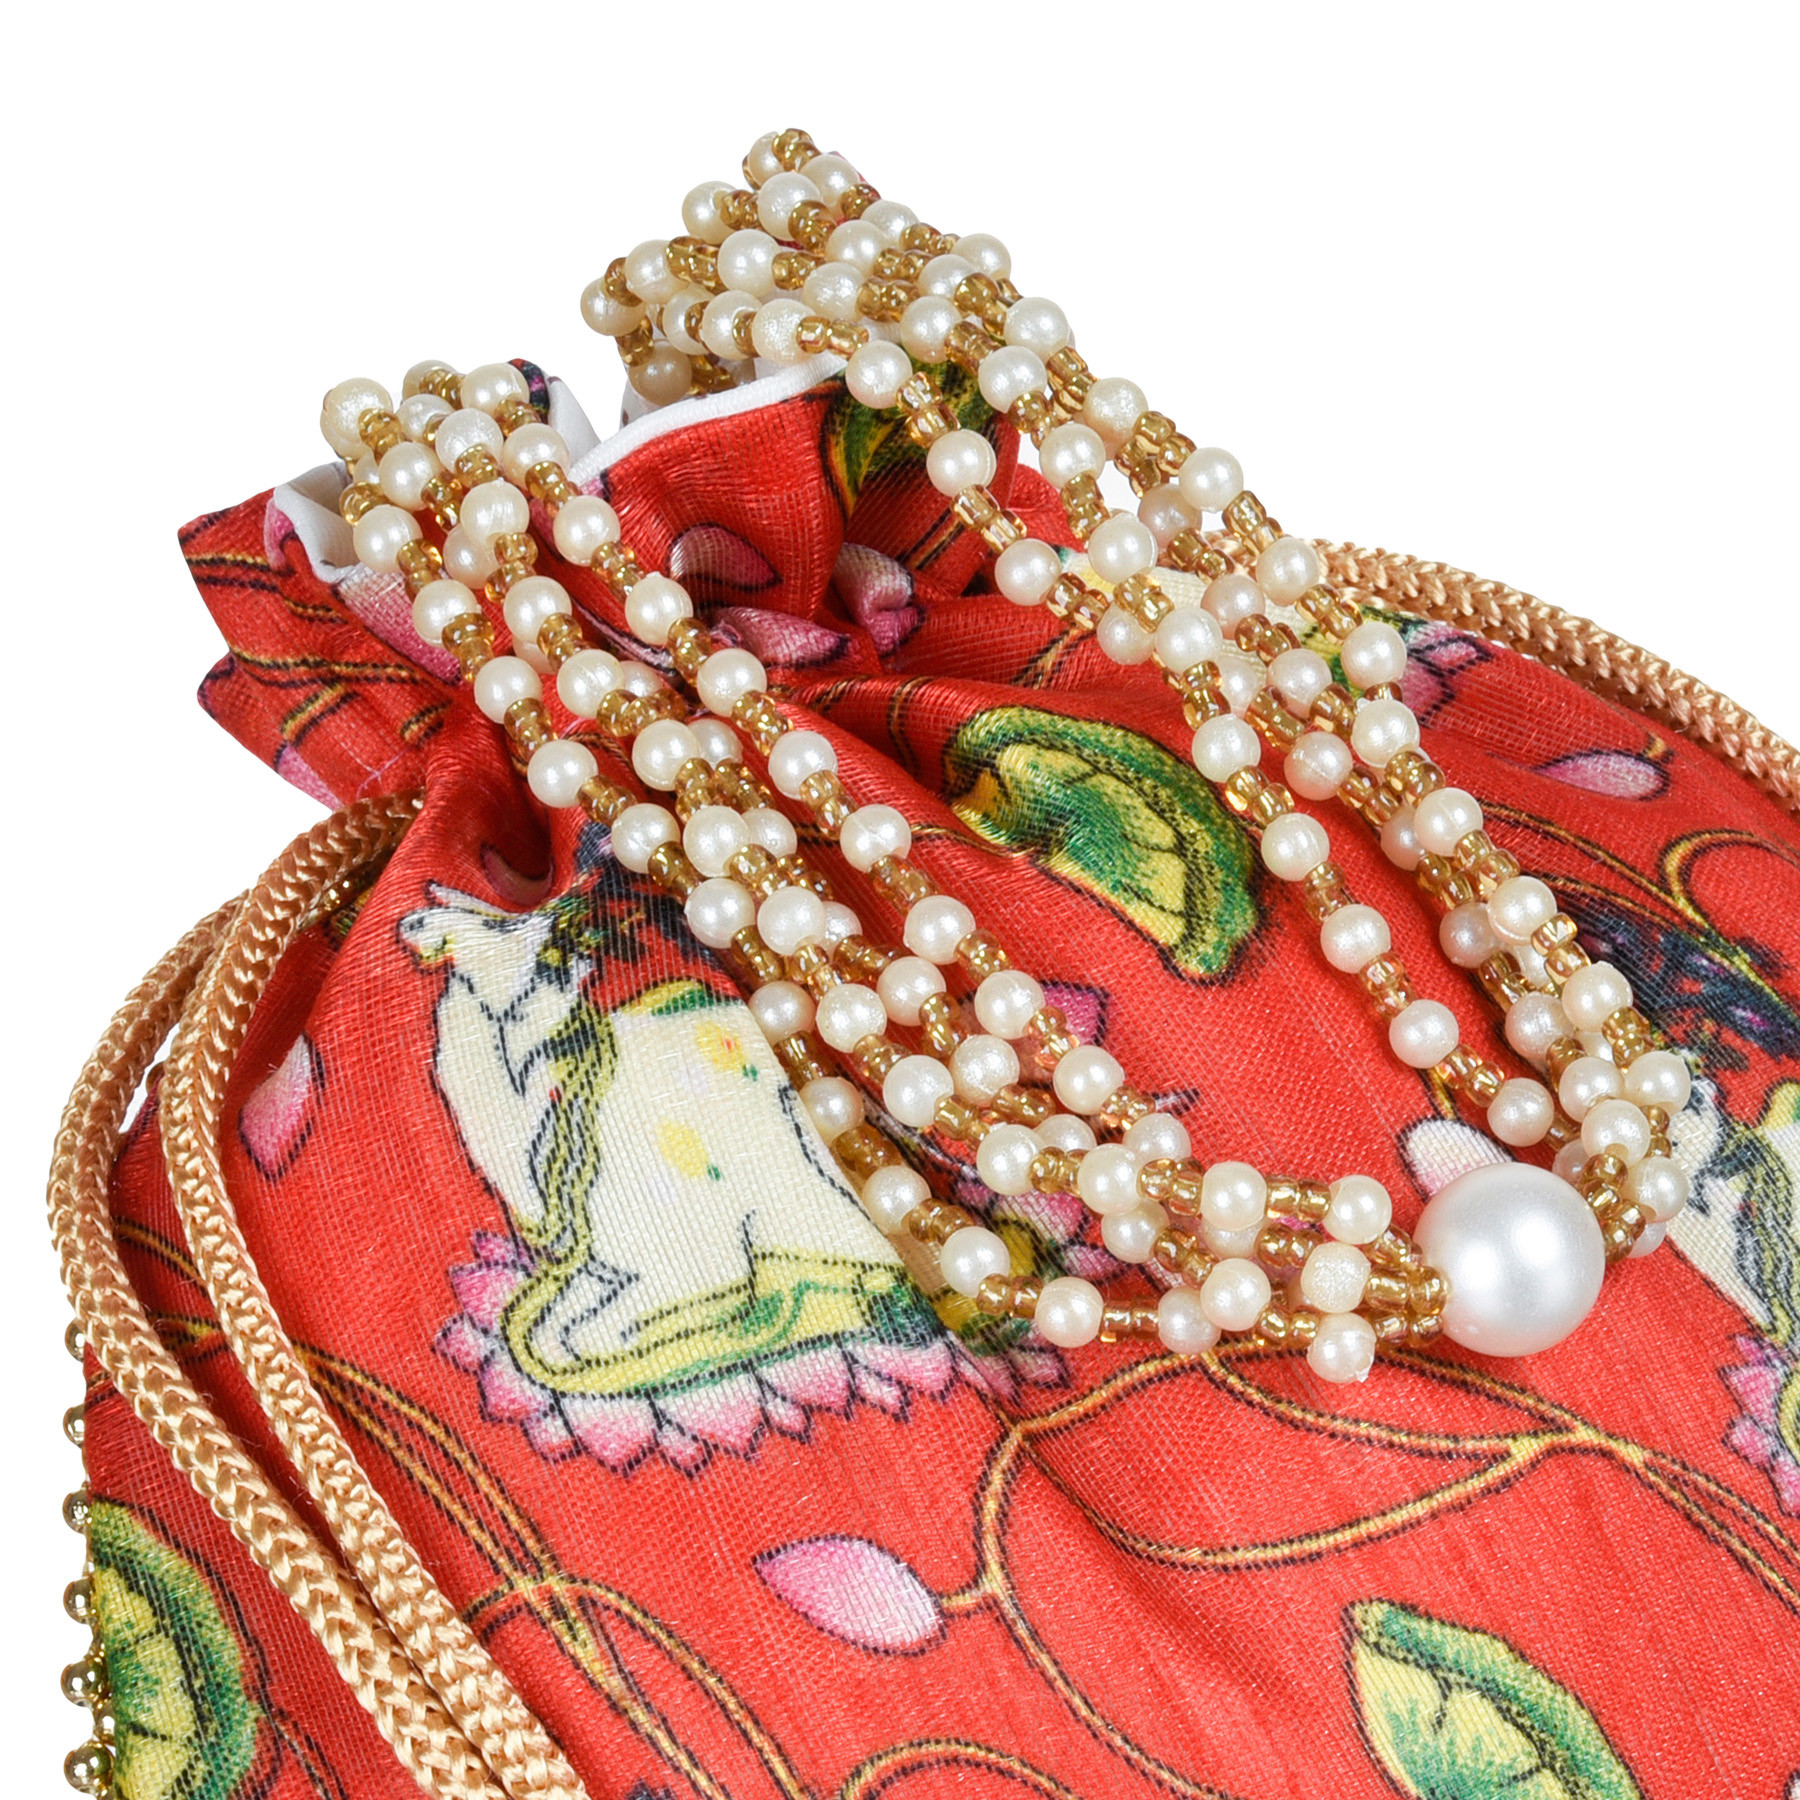 Kuber Industries Potli | Silk Wedding Potli | Wallet Potli | Christmas Gift Potli | Baby Shower Potli | Traditional Shagun Potli | Drawstring with Beads Handle Potli | Cow-Design Patli Potli | Pack of 3 | Multi